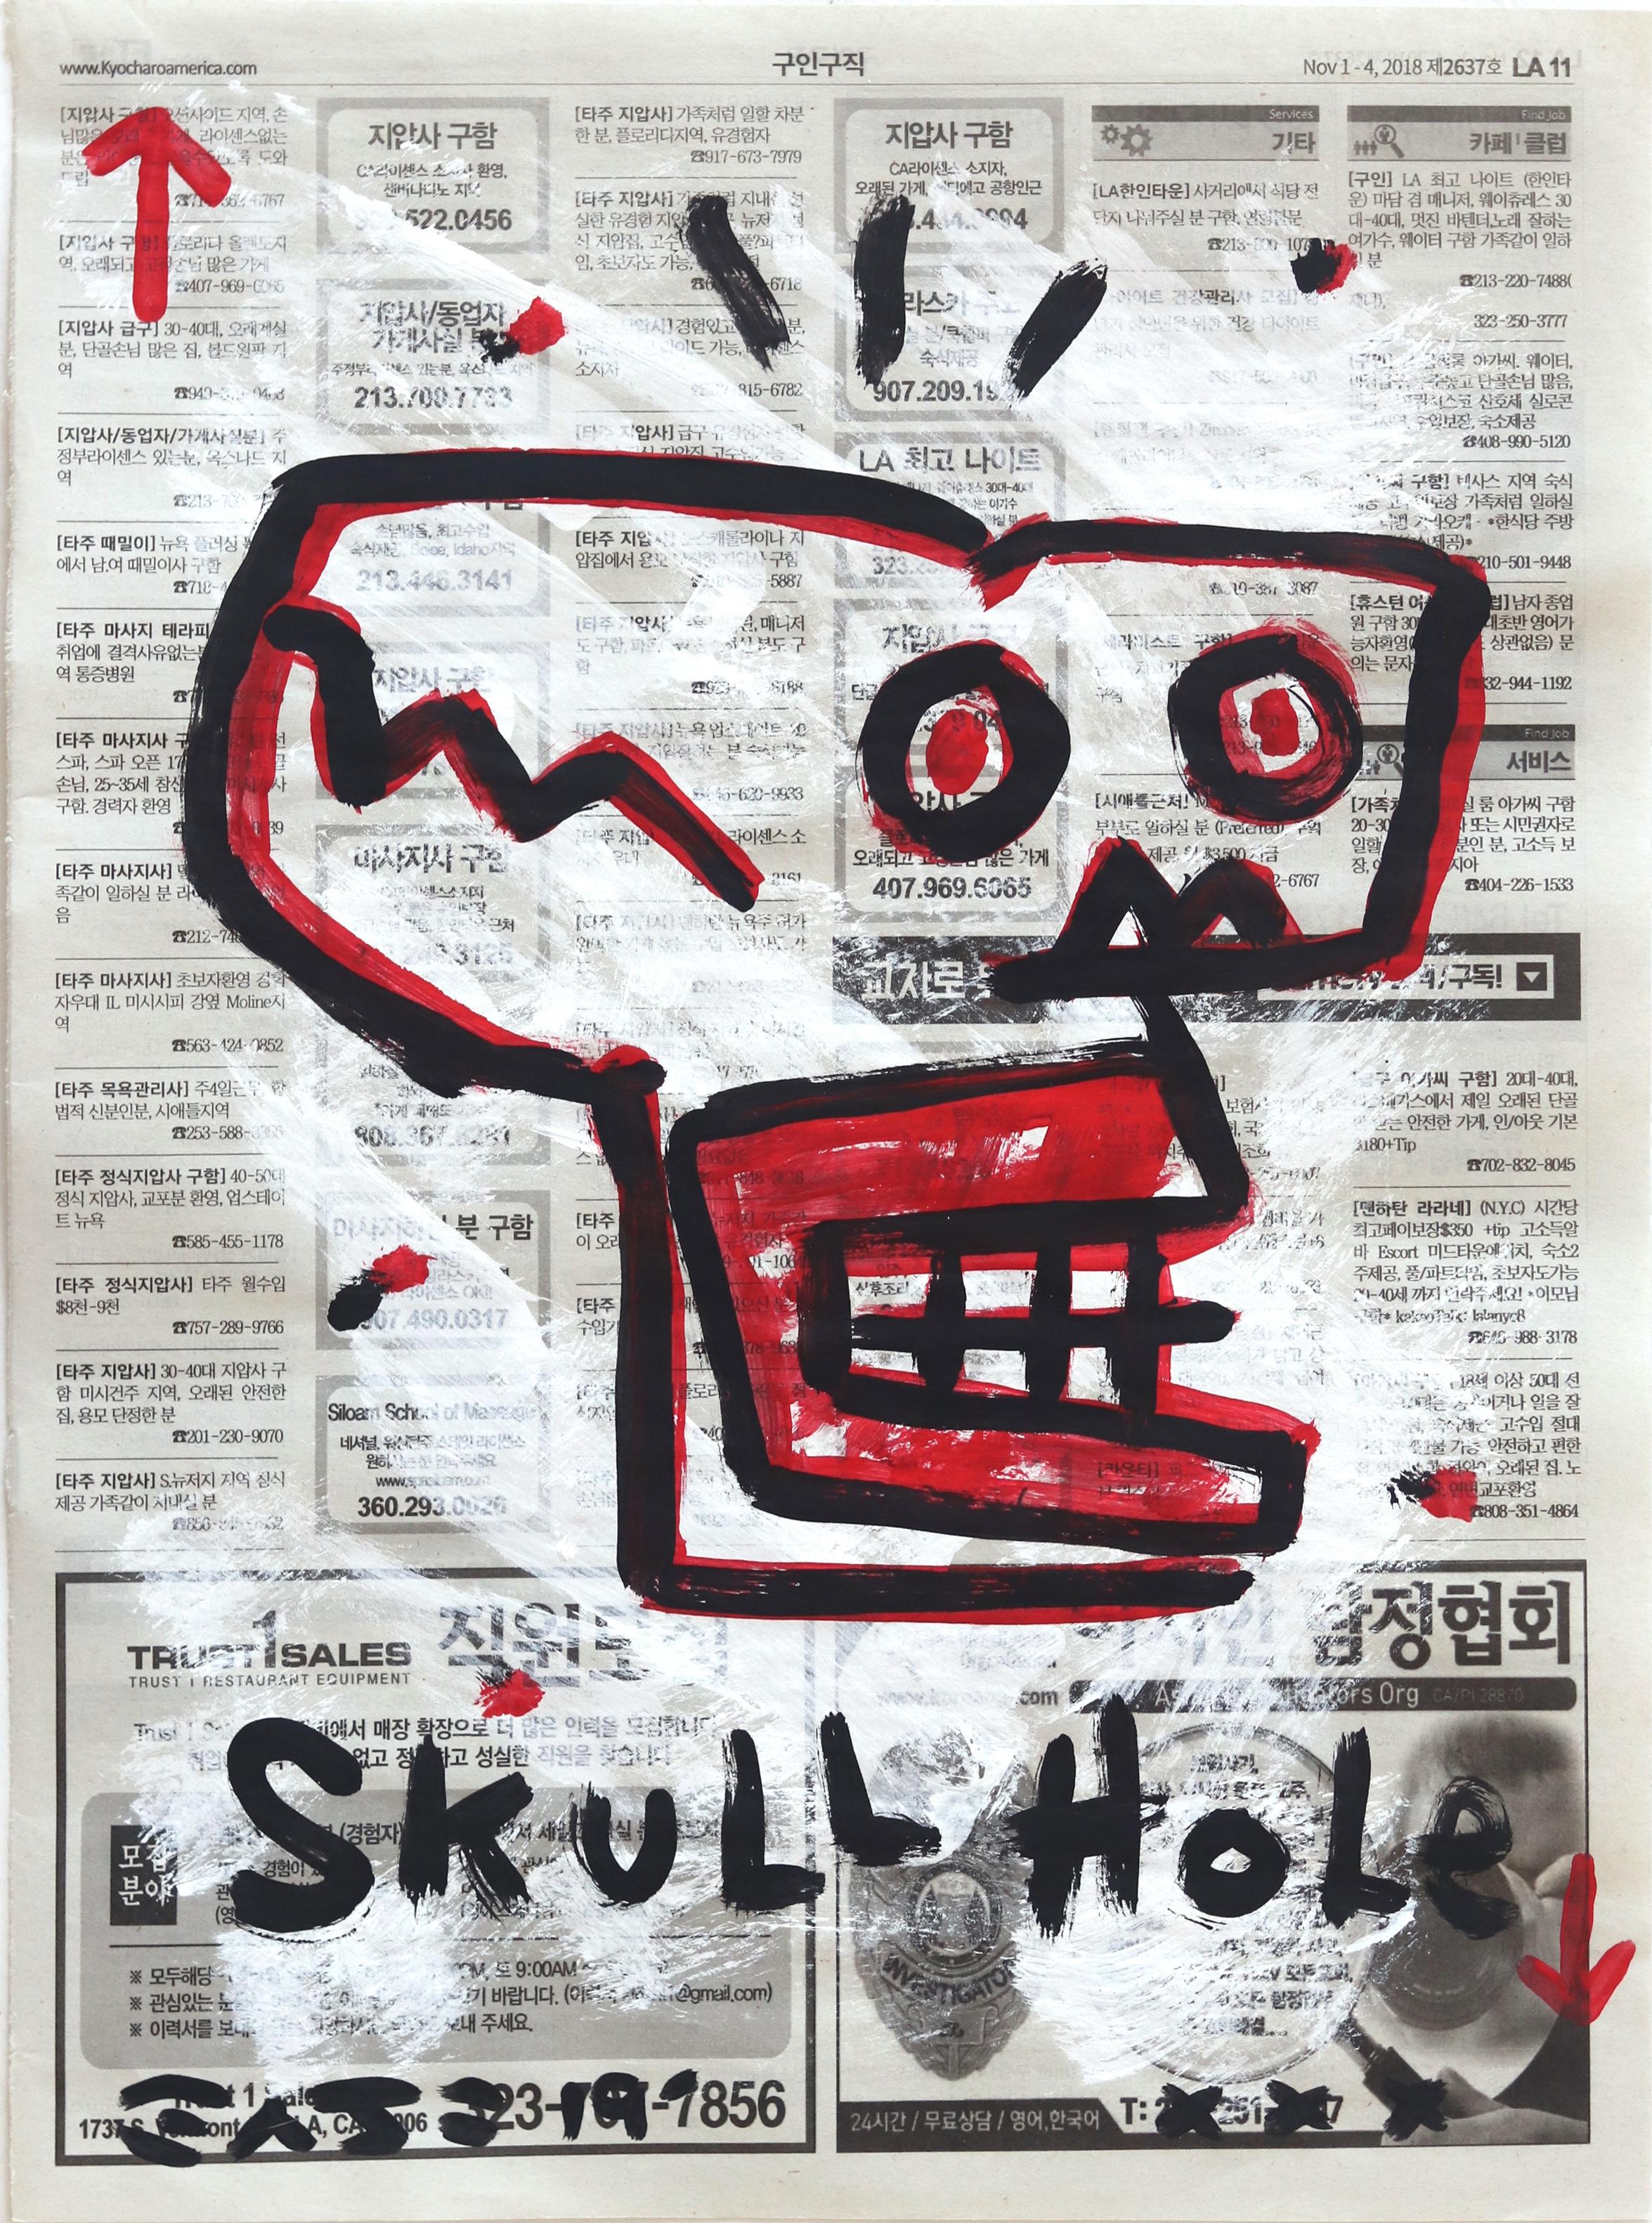 No Skull Hole - Mixed Media Art by Gary John